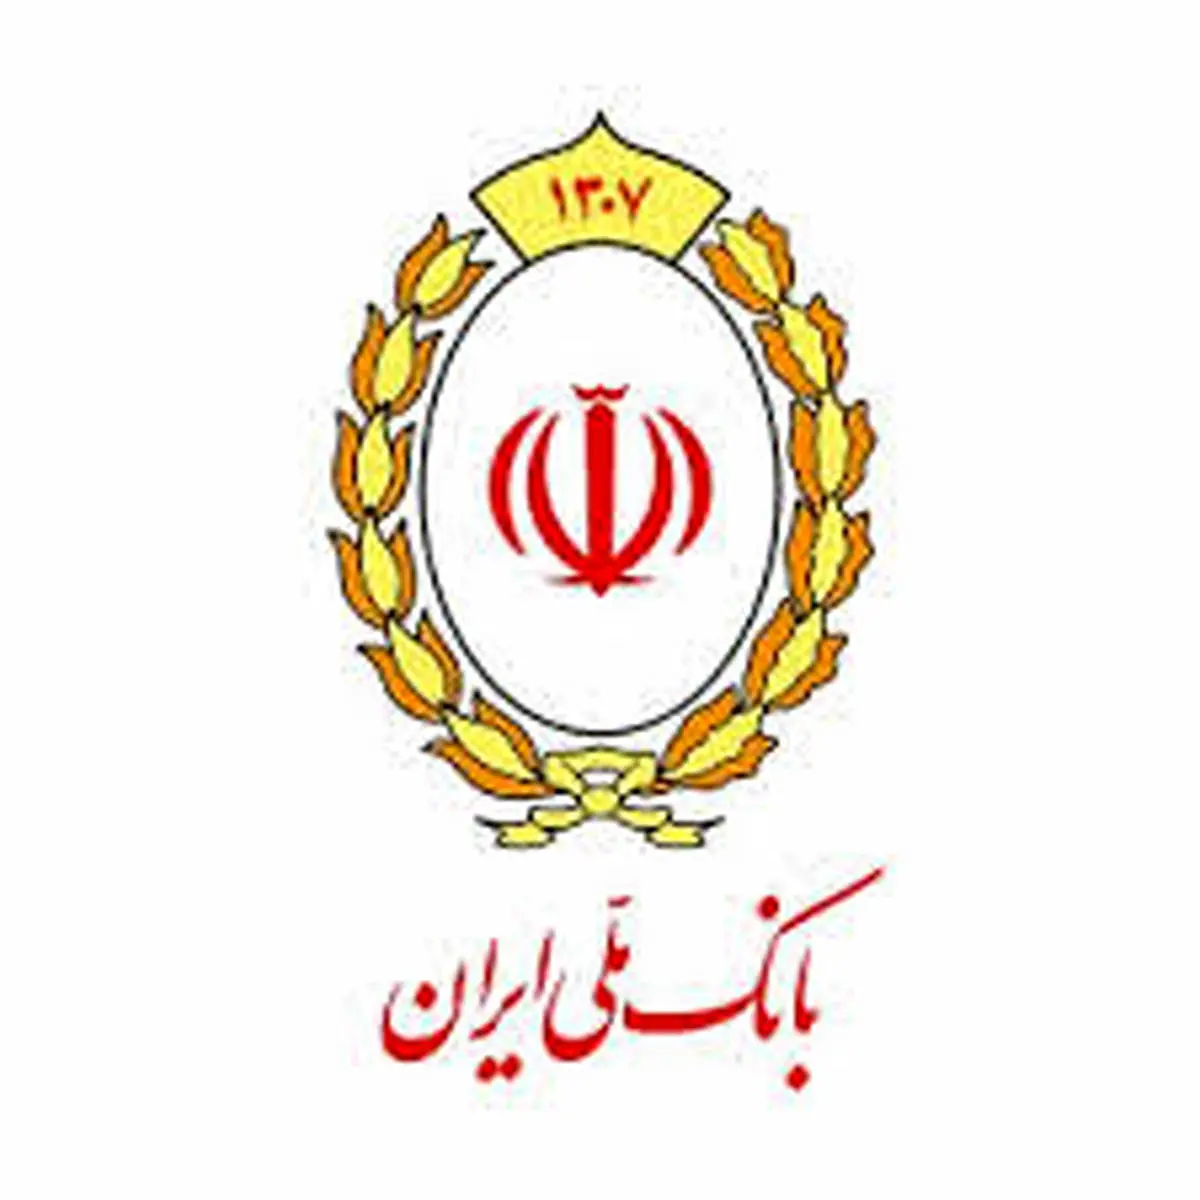 هفتمین مرحله توزیع کمک های مومنانه کارکنان بانک ملی ایران

